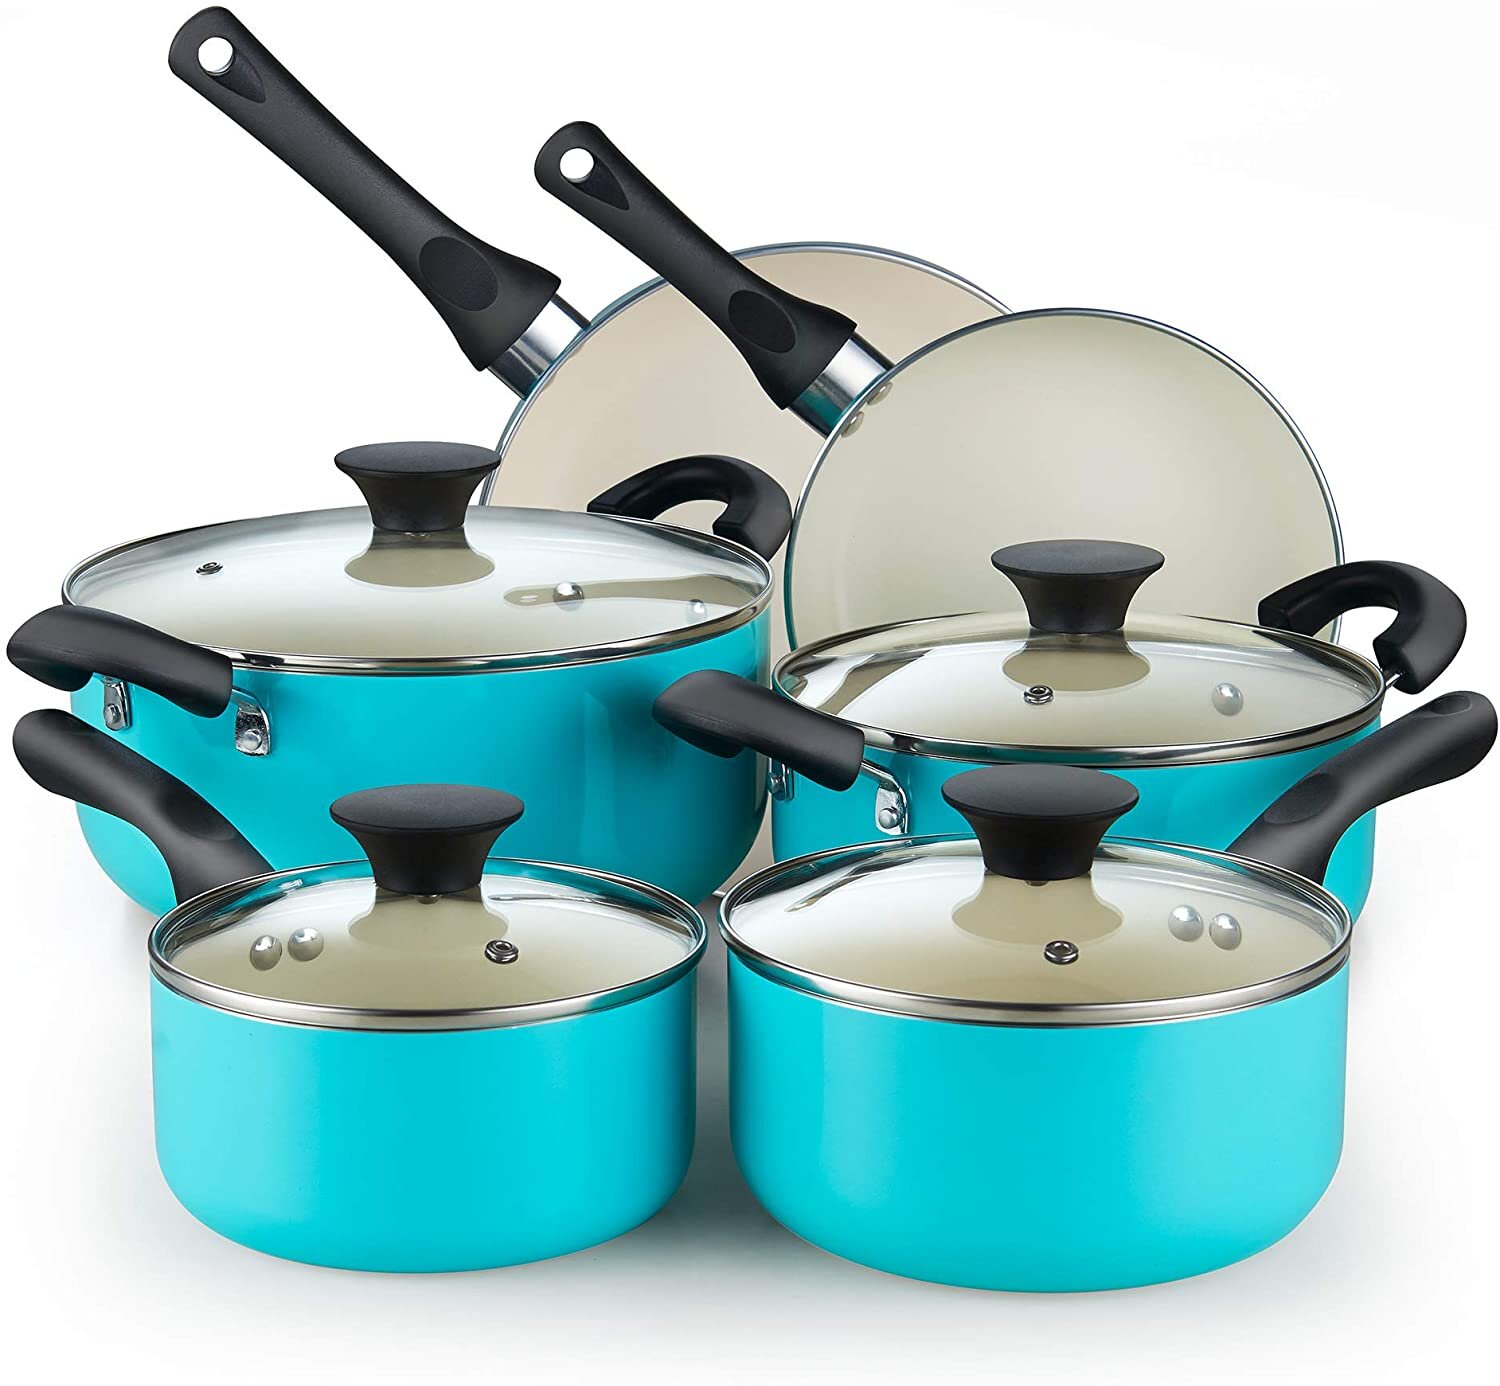 https://assets.wfcdn.com/im/11359255/compr-r85/1408/140803920/cook-n-home-10-pieces-aluminum-non-stick-cookware-set.jpg